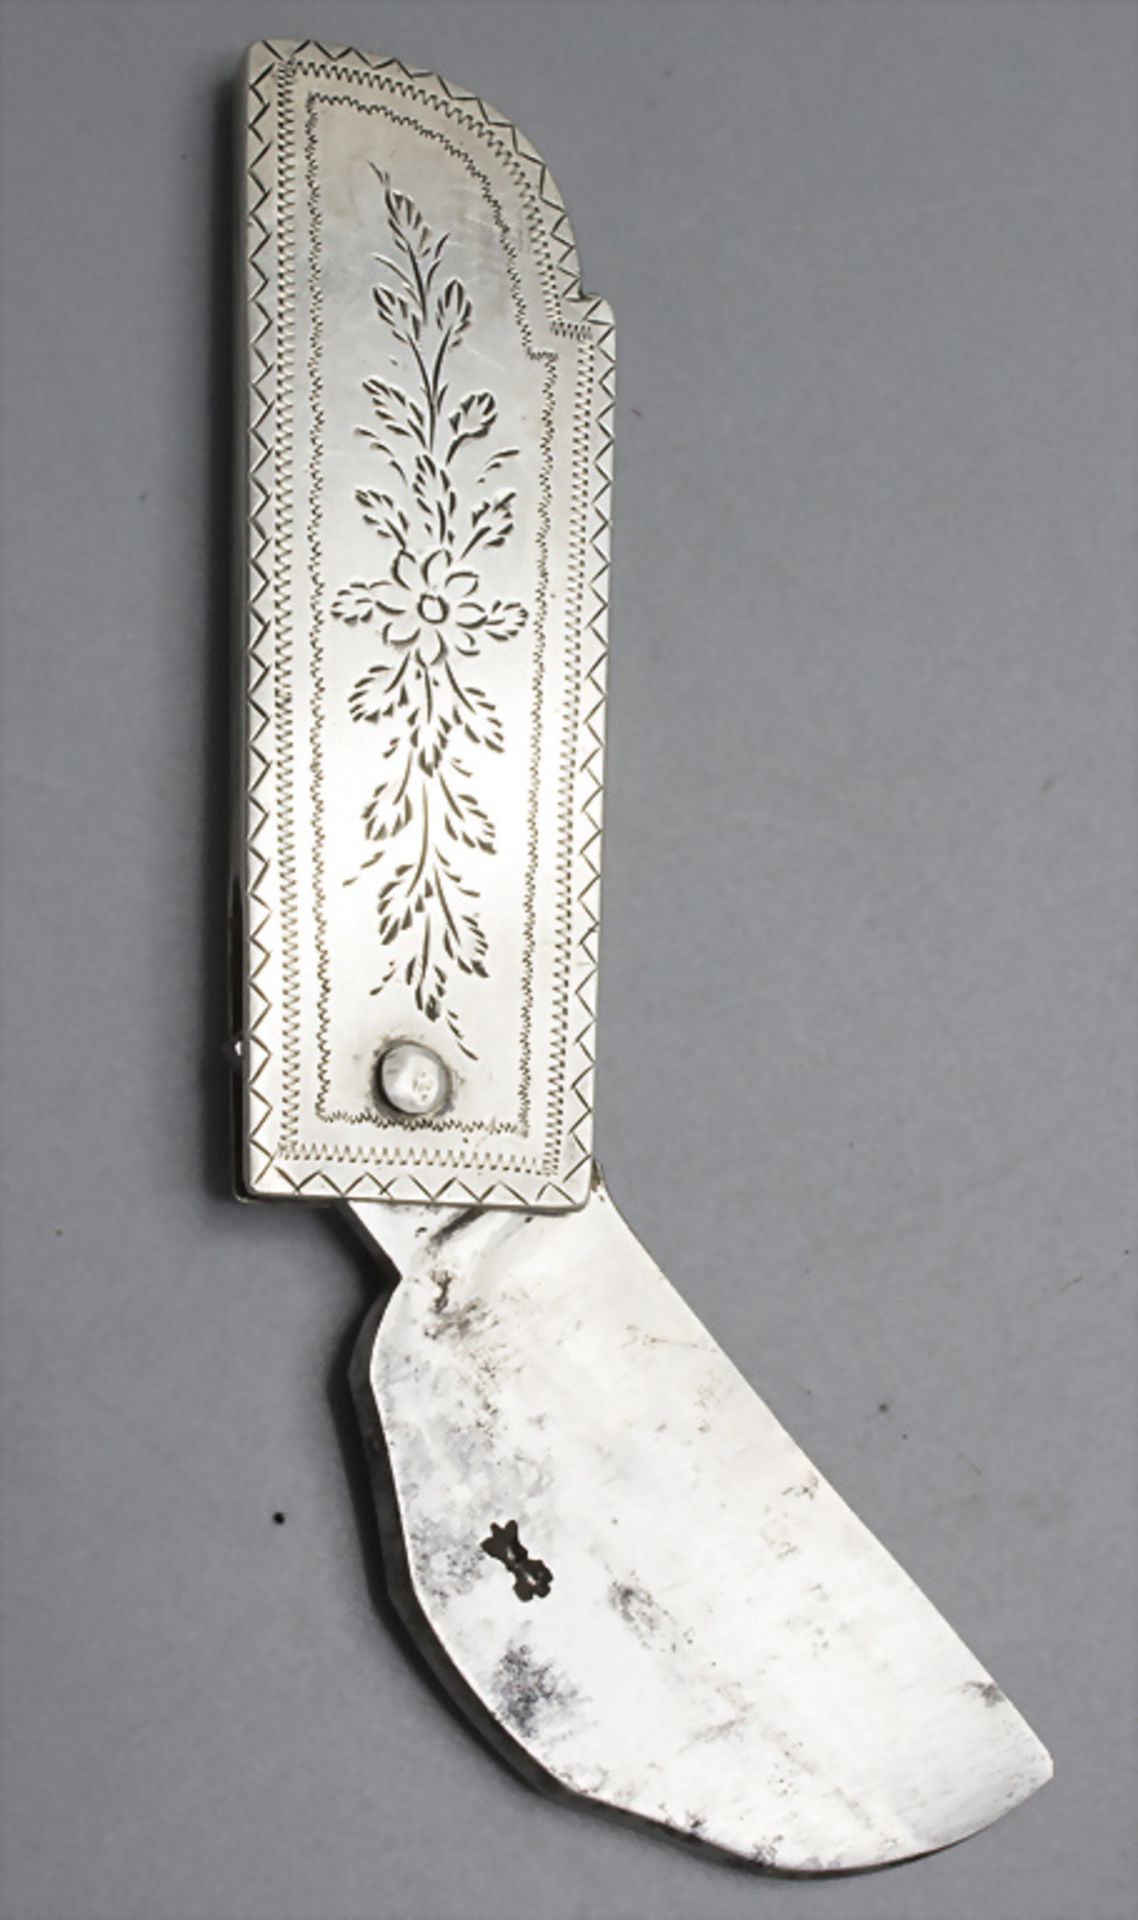 Brit Mila Beschneidungsmesser und Puderdose / A brit milah circumcision knife and powder compact - Bild 3 aus 5